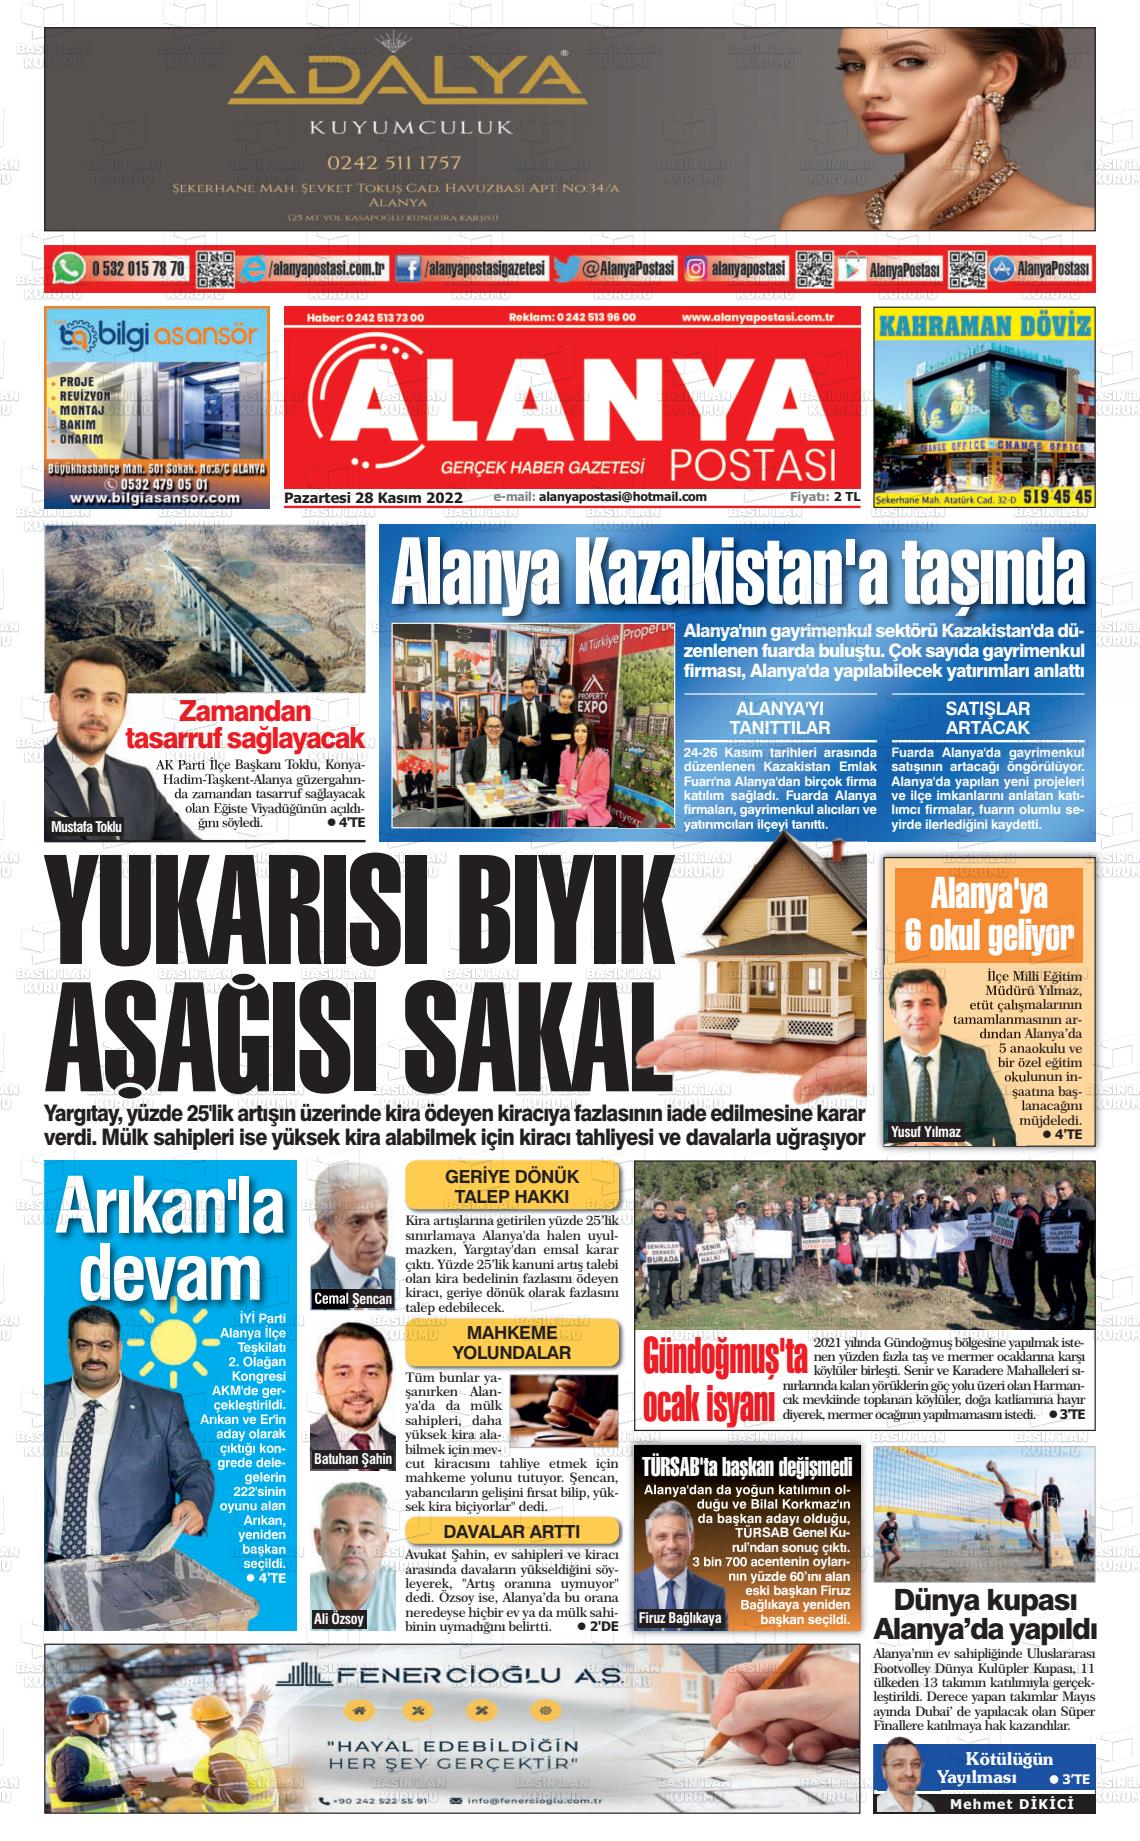 28 Kasım 2022 Alanya Postası Gazete Manşeti